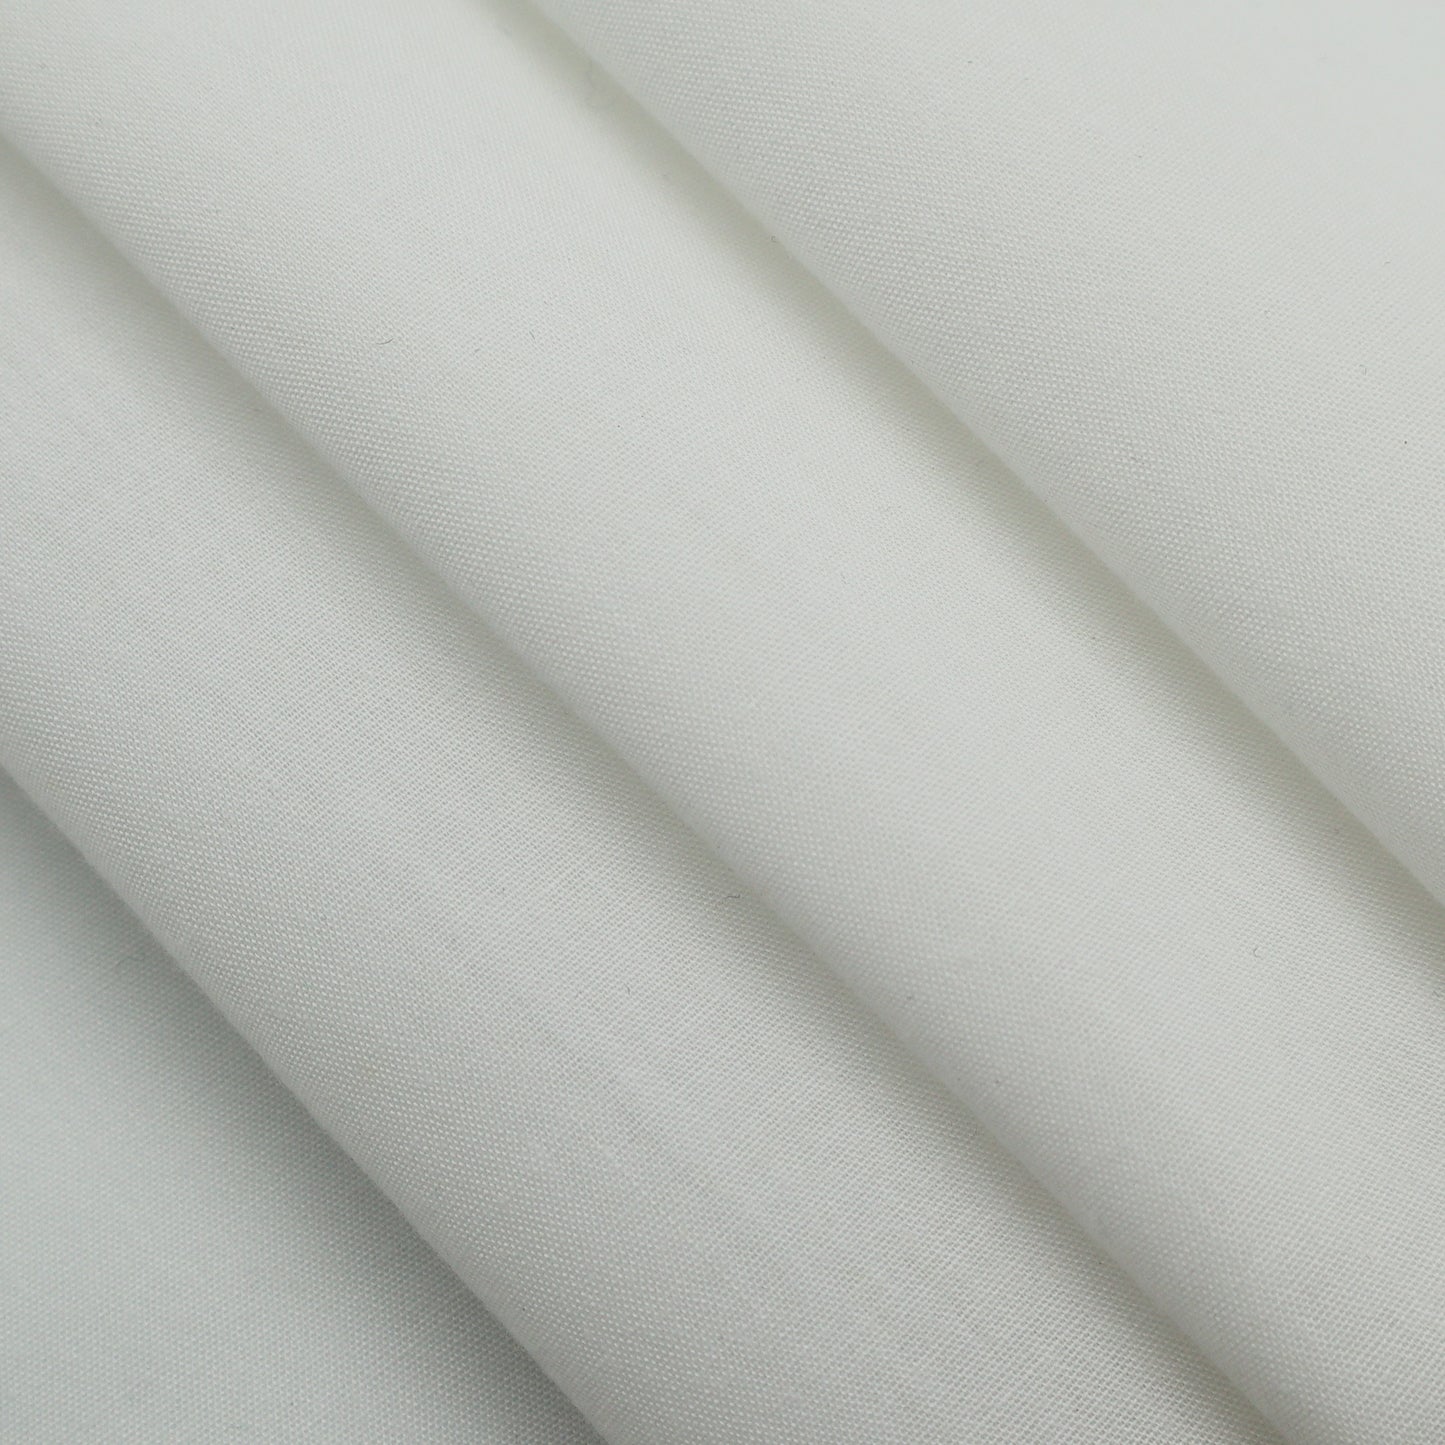 Lightweight Cotton Lawn in Casper (White)